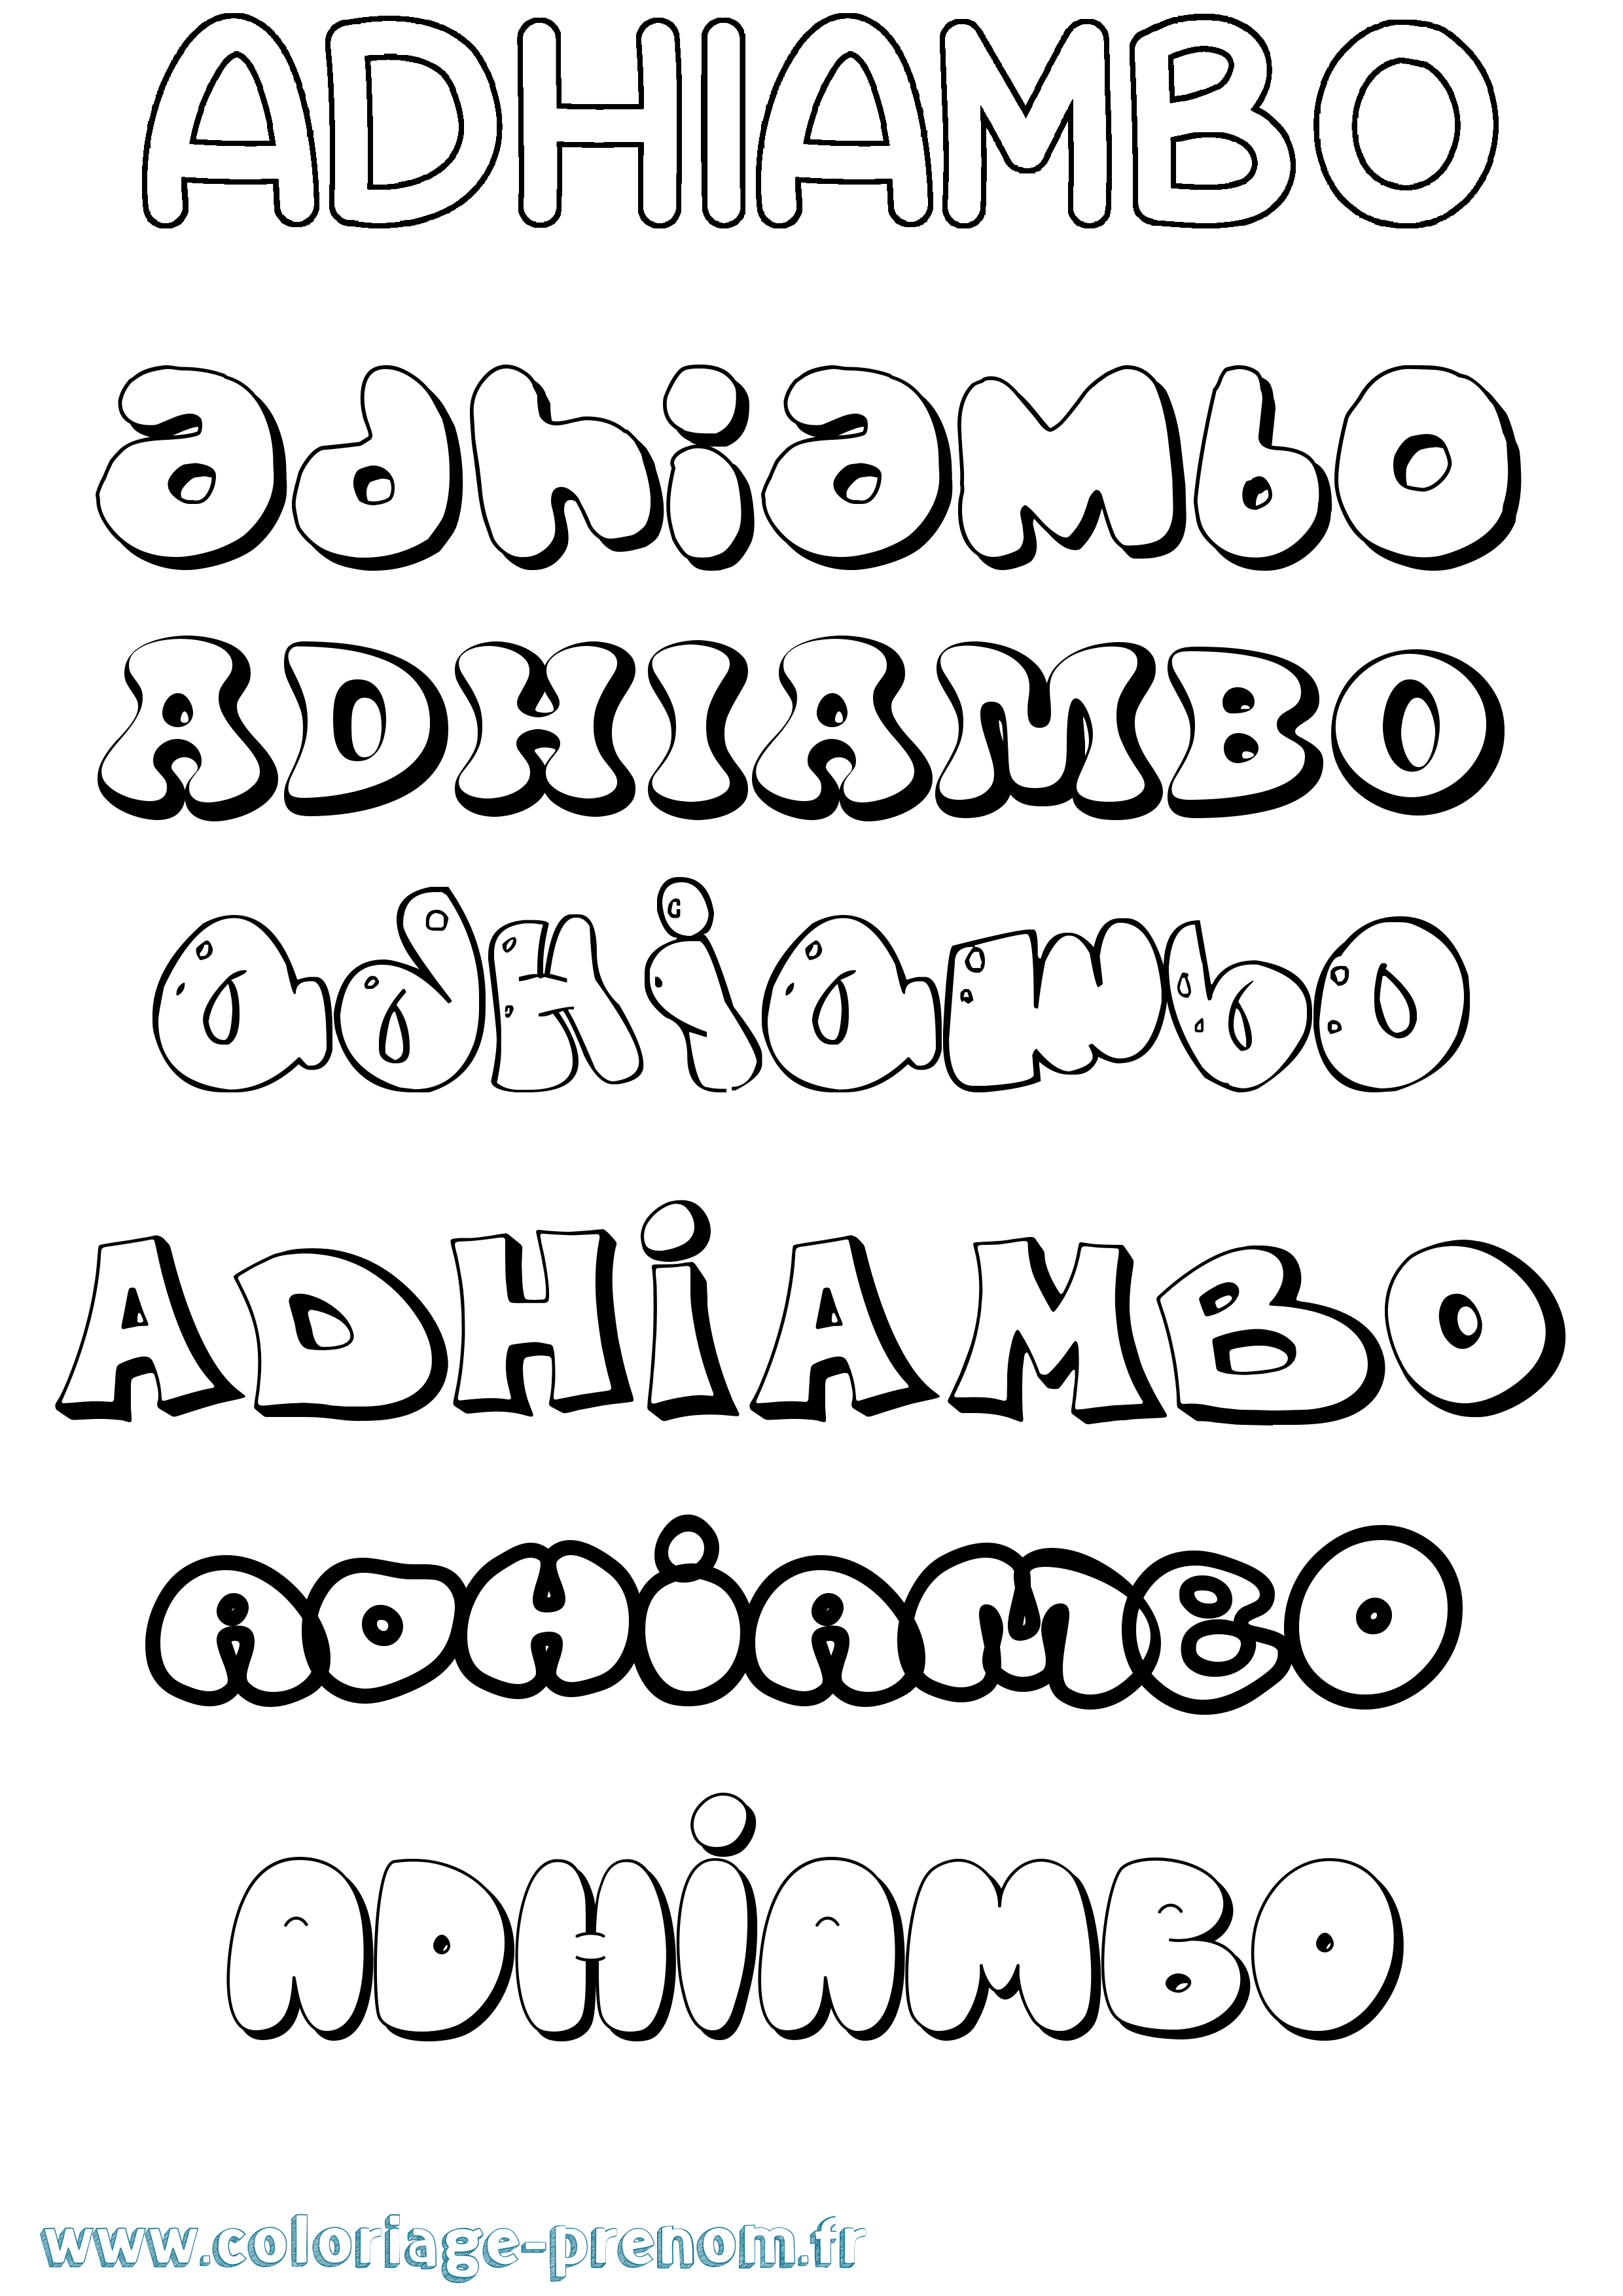 Coloriage prénom Adhiambo Bubble